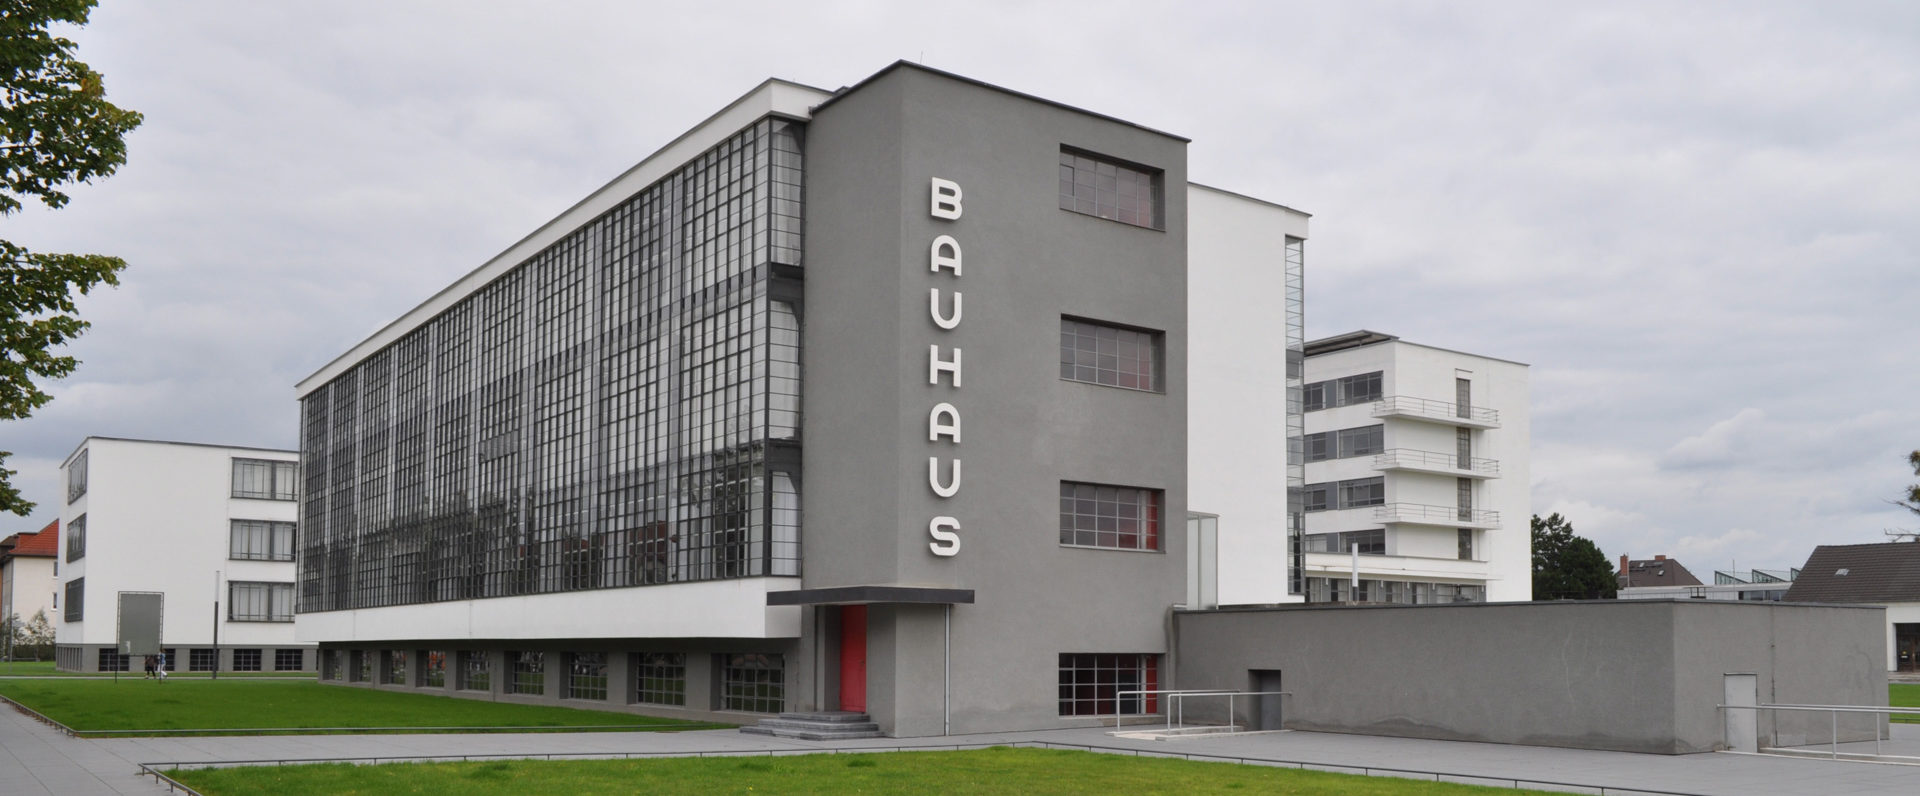 Restaurierung, Farbkonzept, Bestandsanalyse - Dessau, Bauhausgebäude, Außenansicht